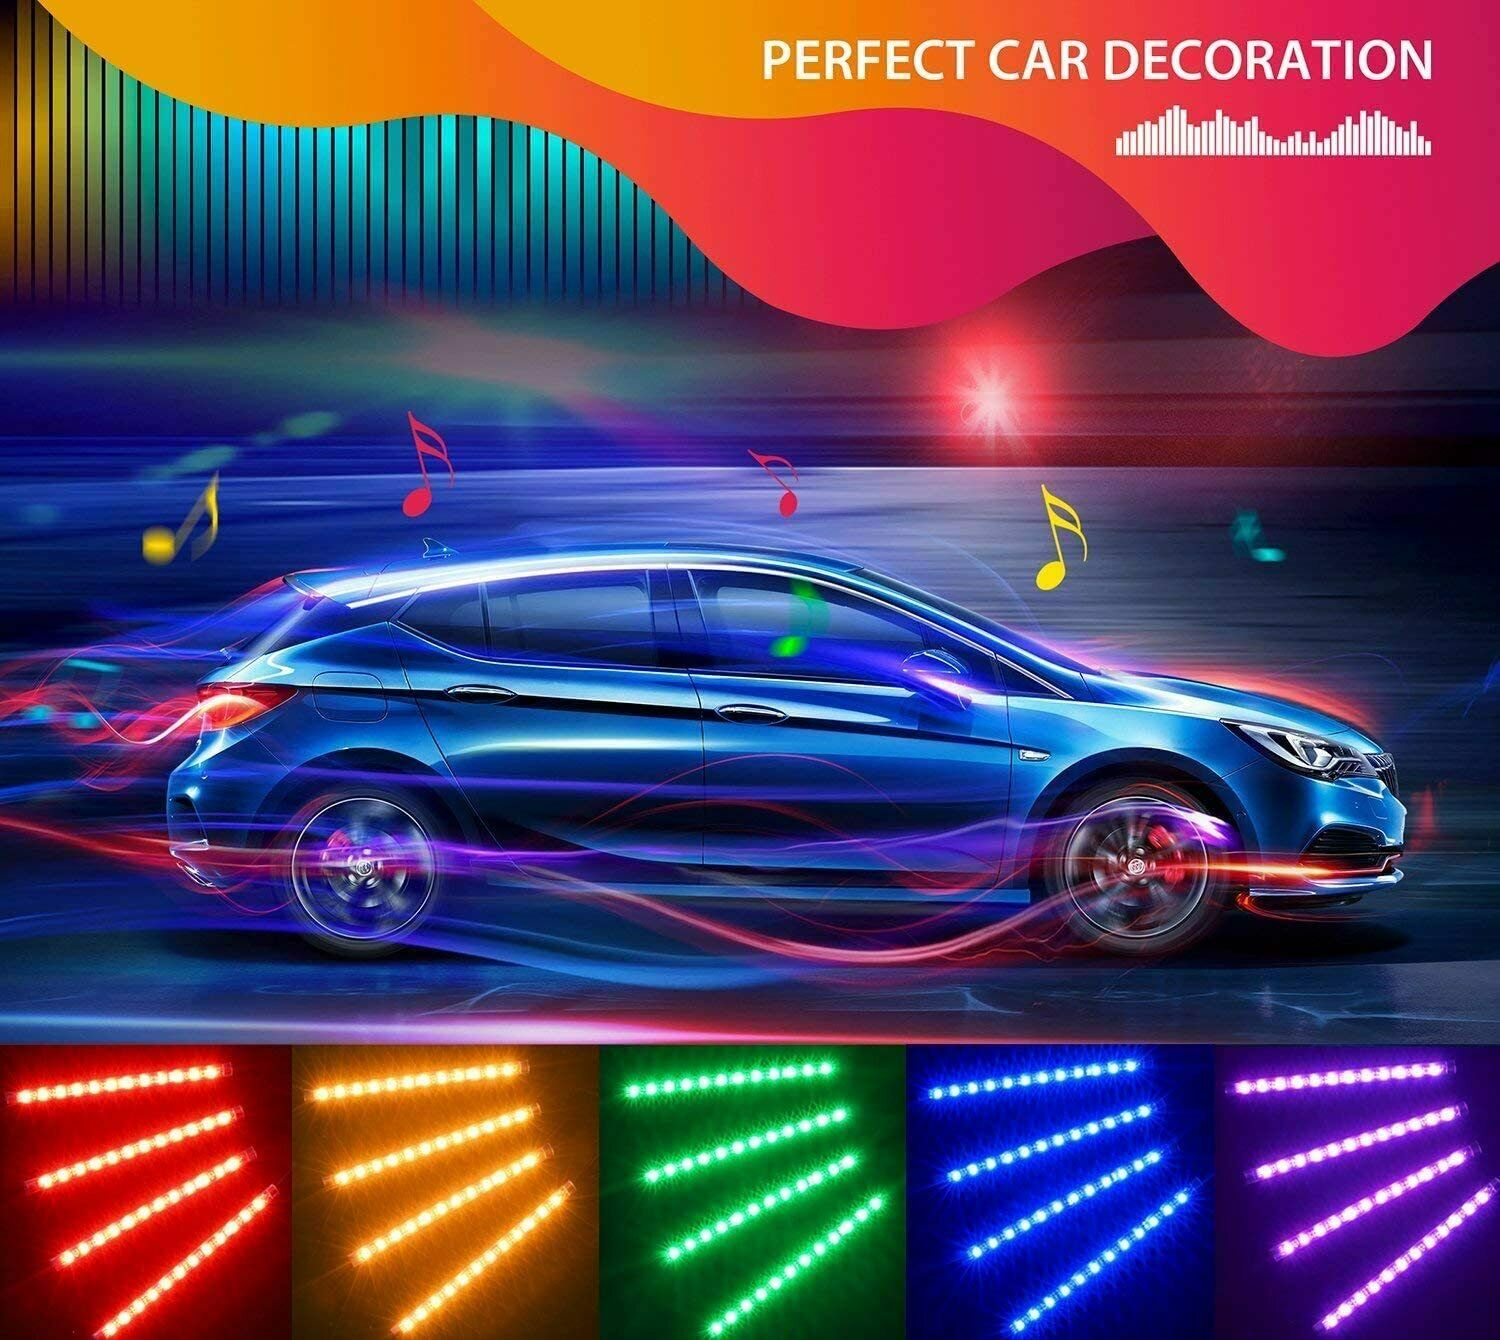 Striscia LED per illuminazione interni auto, 48 LED multicolore